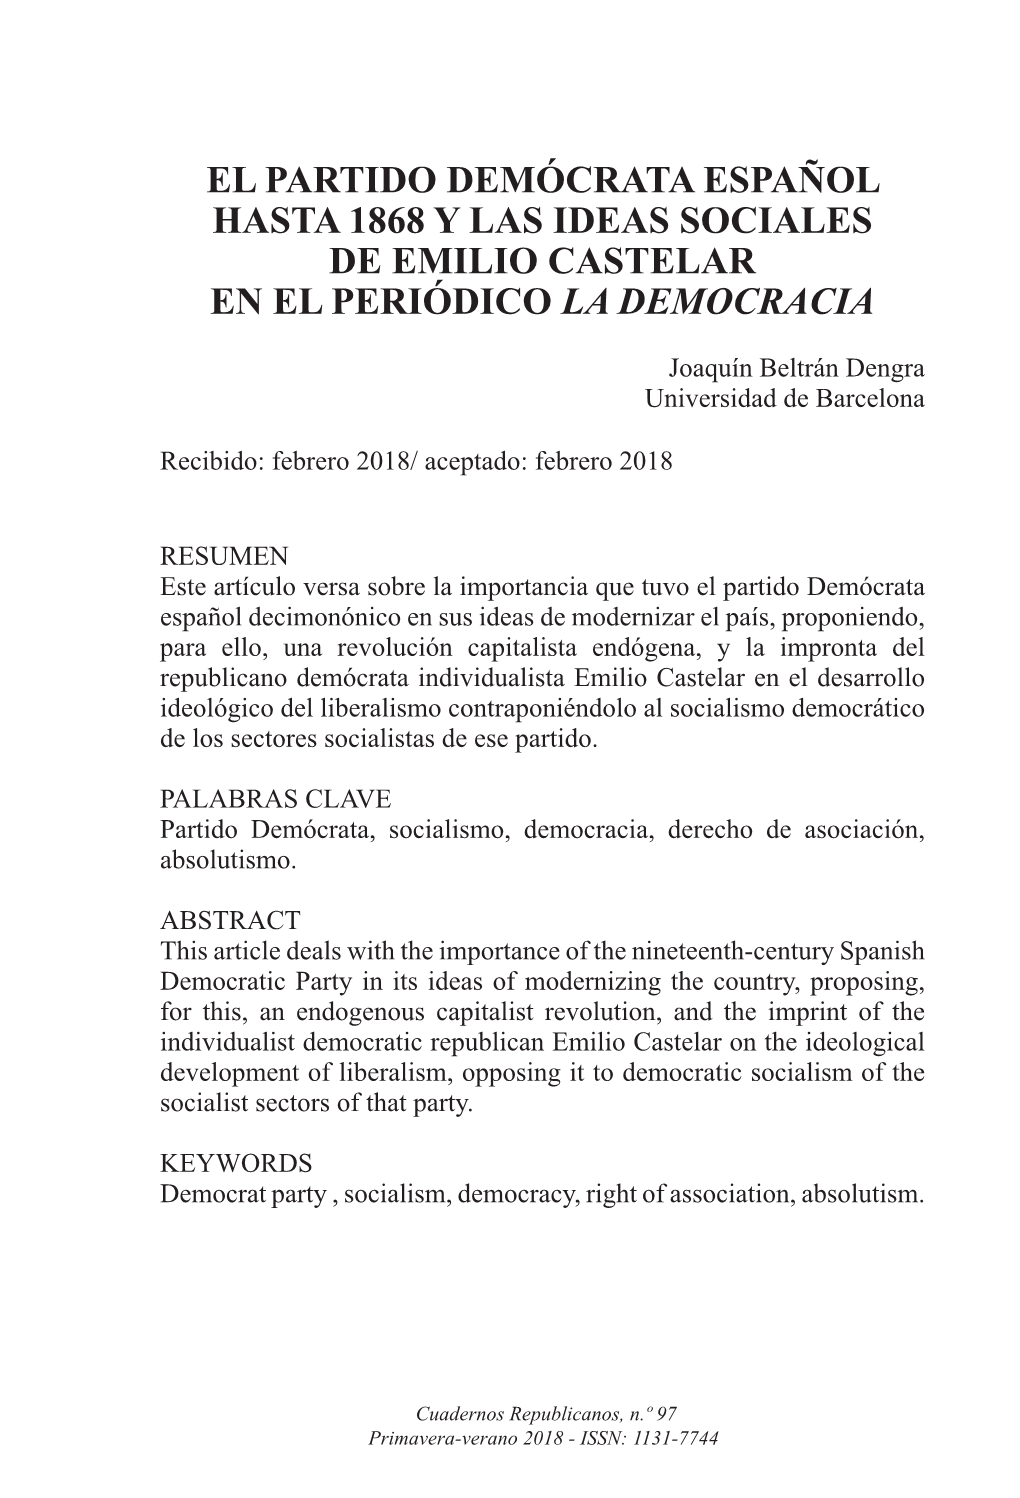 El Partido Demócrata Español Hasta 1868 Y Las Ideas Sociales De Emilio Castelar En El Periódico La Democracia